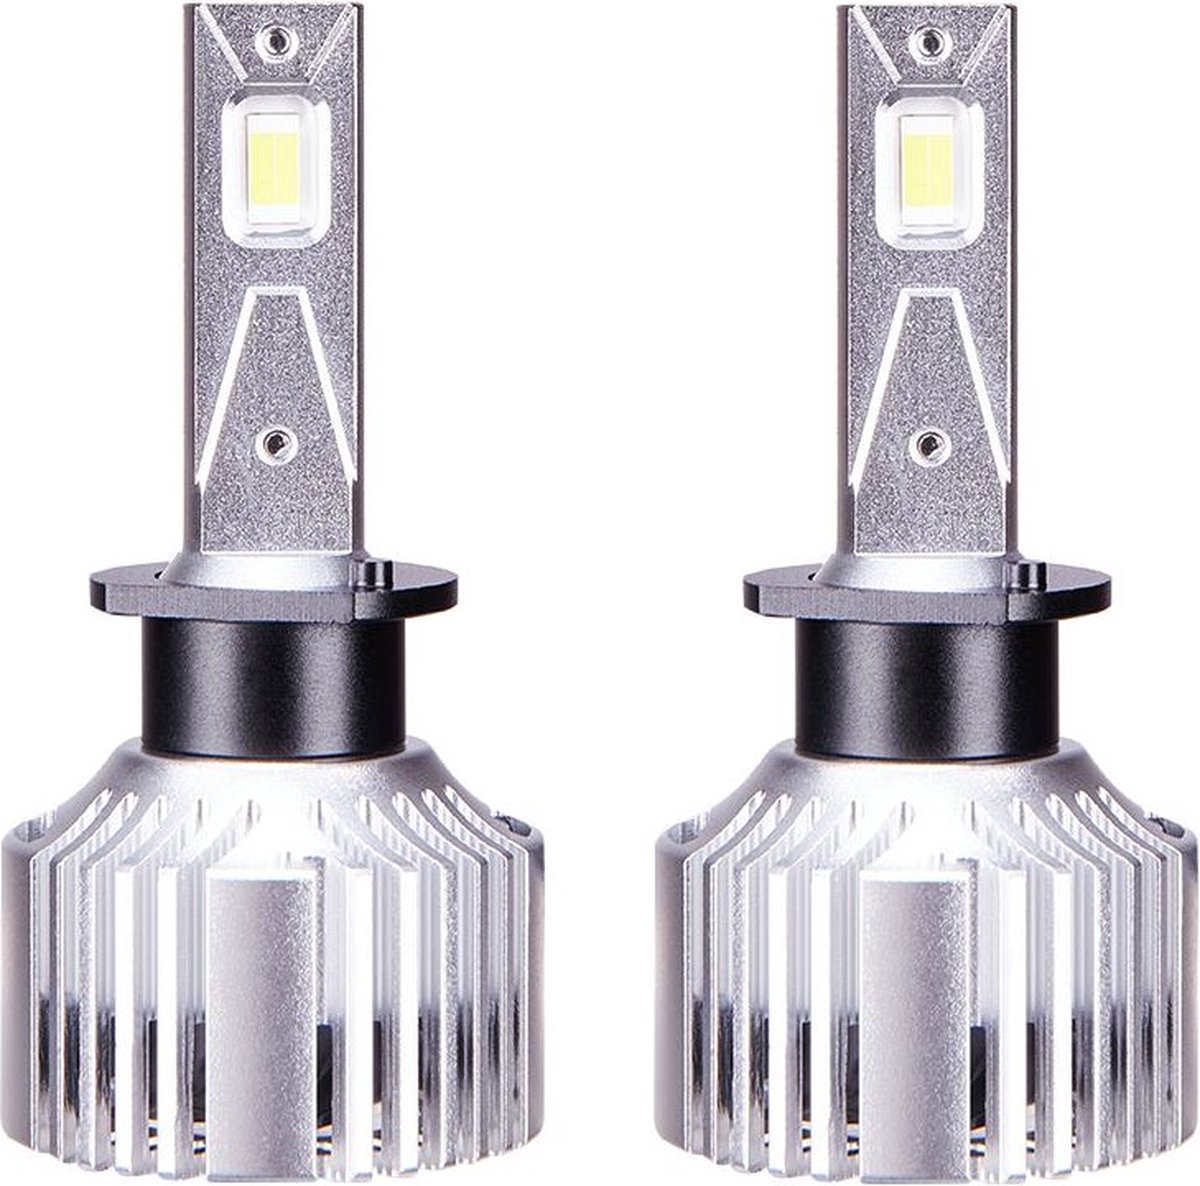 TLVX H1 High Speed LED Koplampen CANBUS - 6000k Helder Wit (set 2 stuks), CANBUS, 20000 Lumen Lichtopbrengst - 80 Watt - Auto - Scooter - Motor - Dimlicht - Grootlicht – Mistlicht - Koplamp – Projector – Reflector - Autolamp - Autolampen - 12V